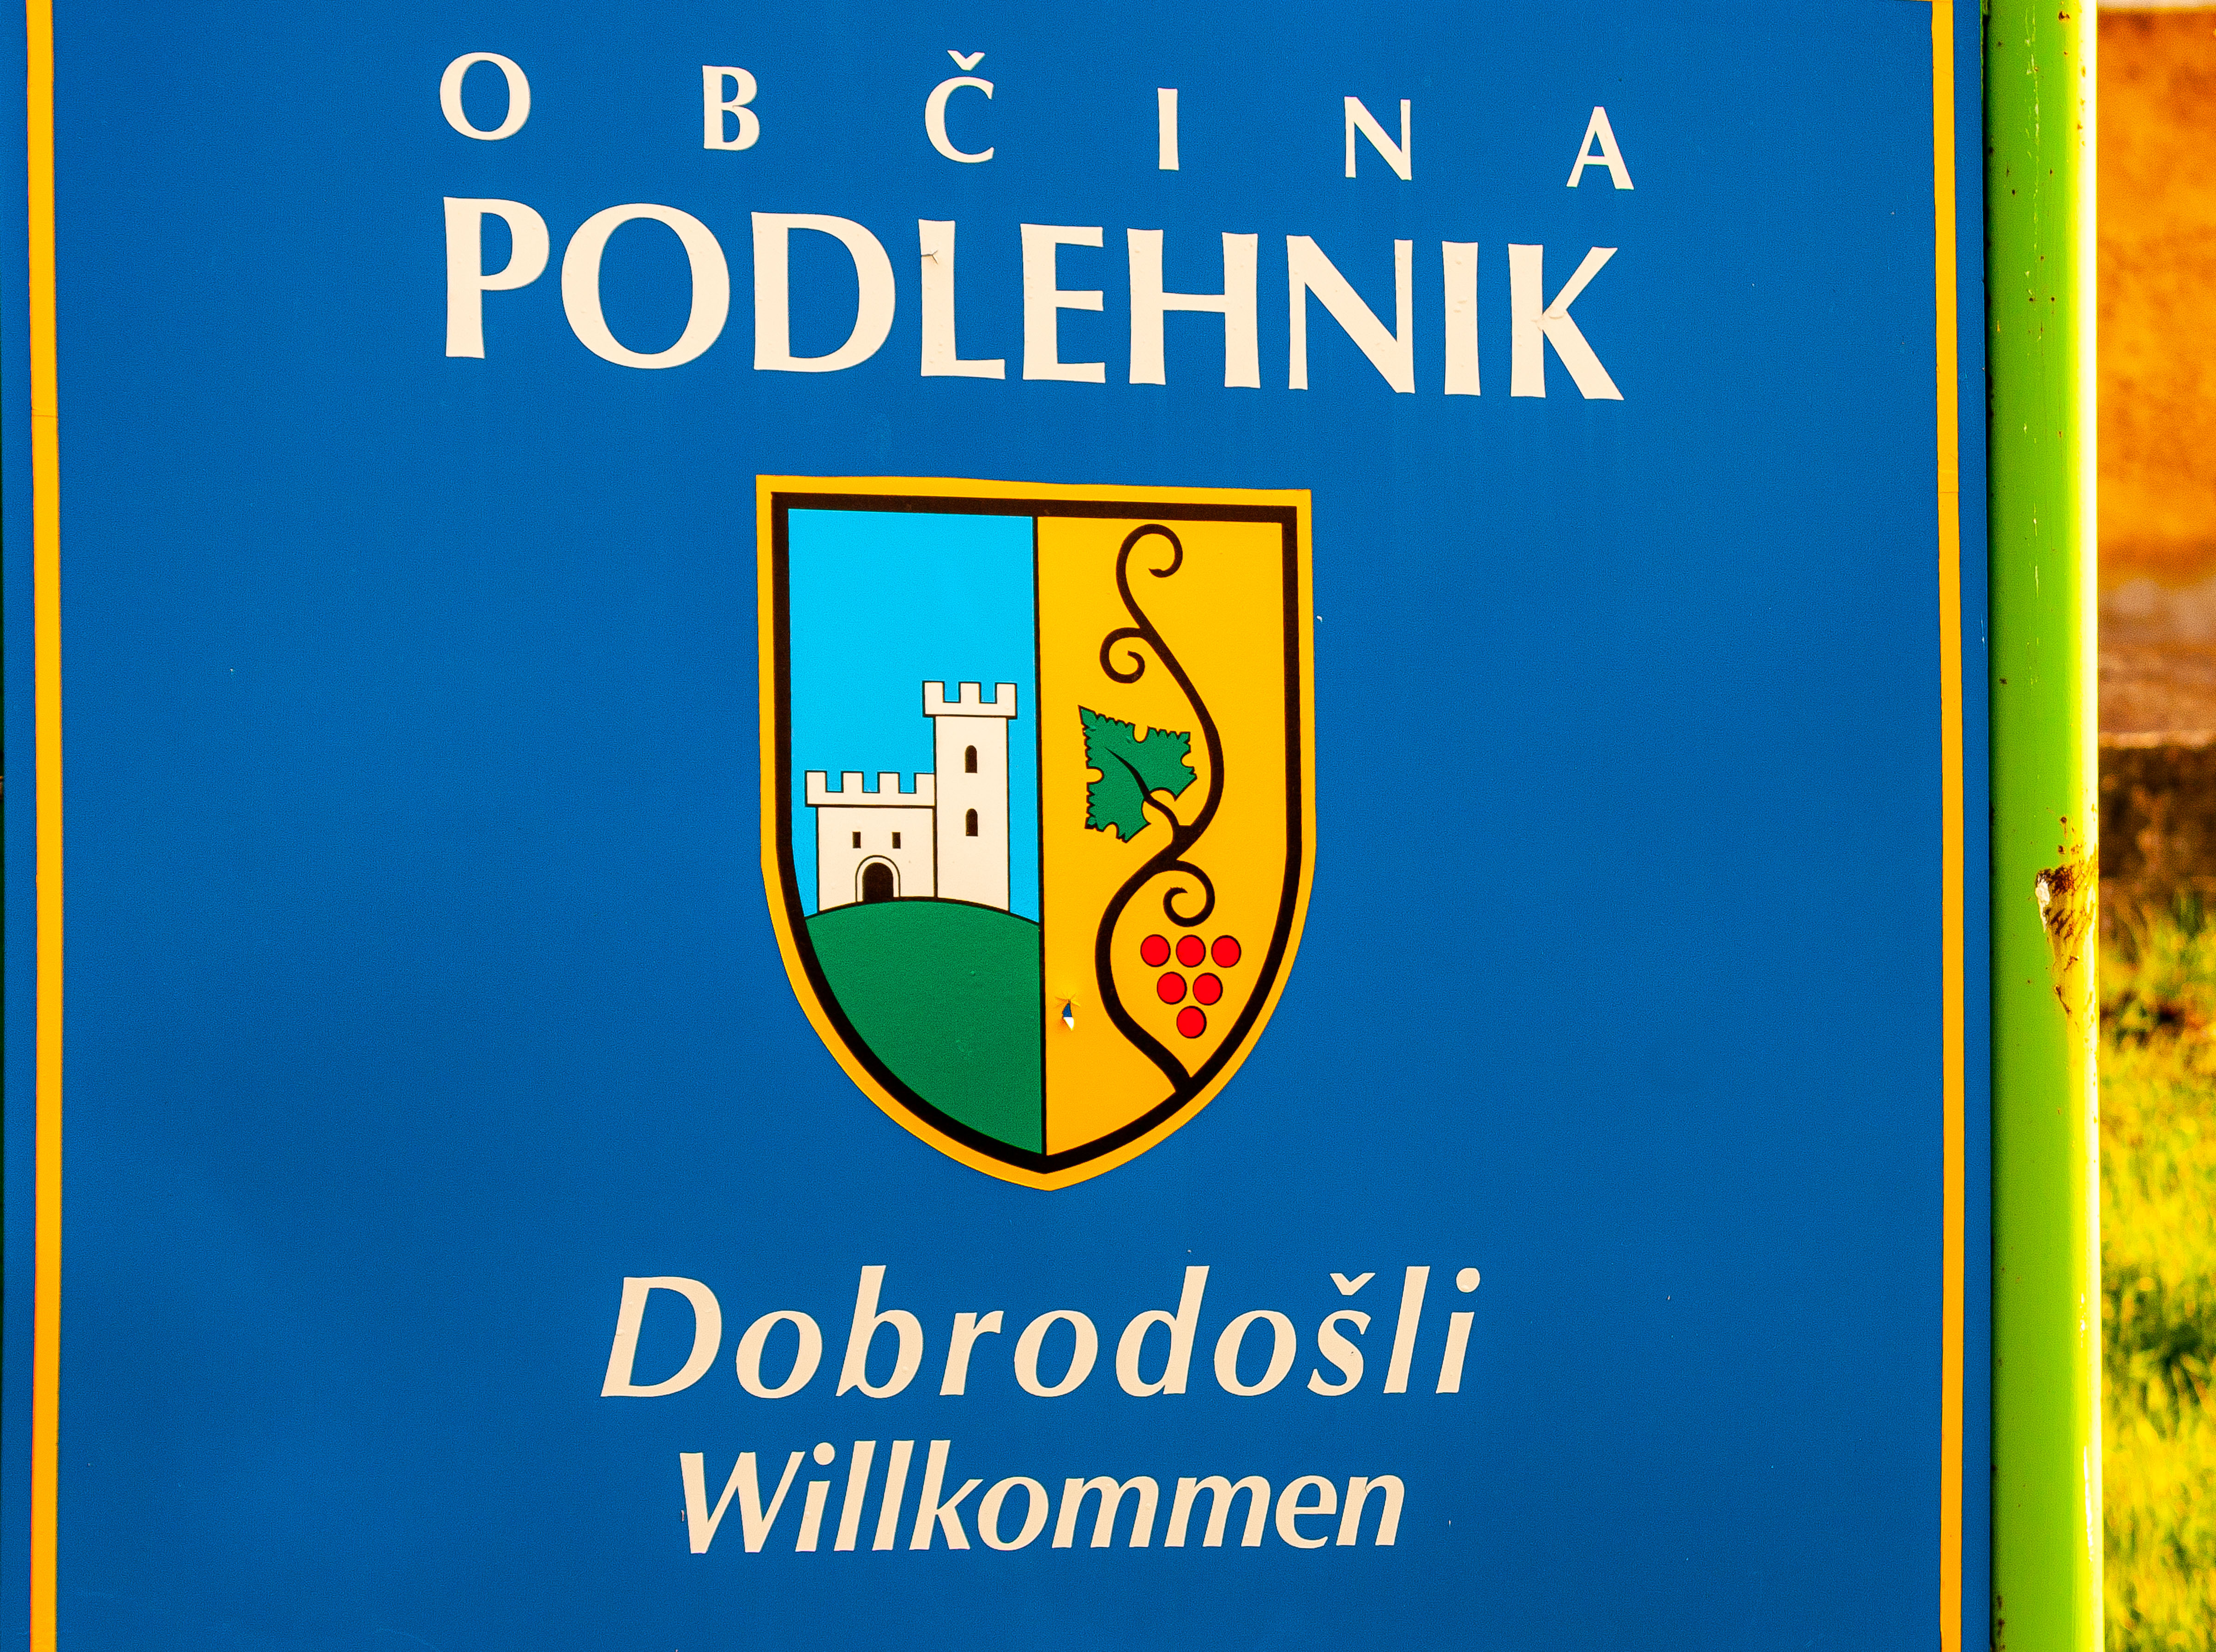 Slovenia, Podlehnik Prov, Welcome To Podlehnik Obcina, 2006, IMG 5473